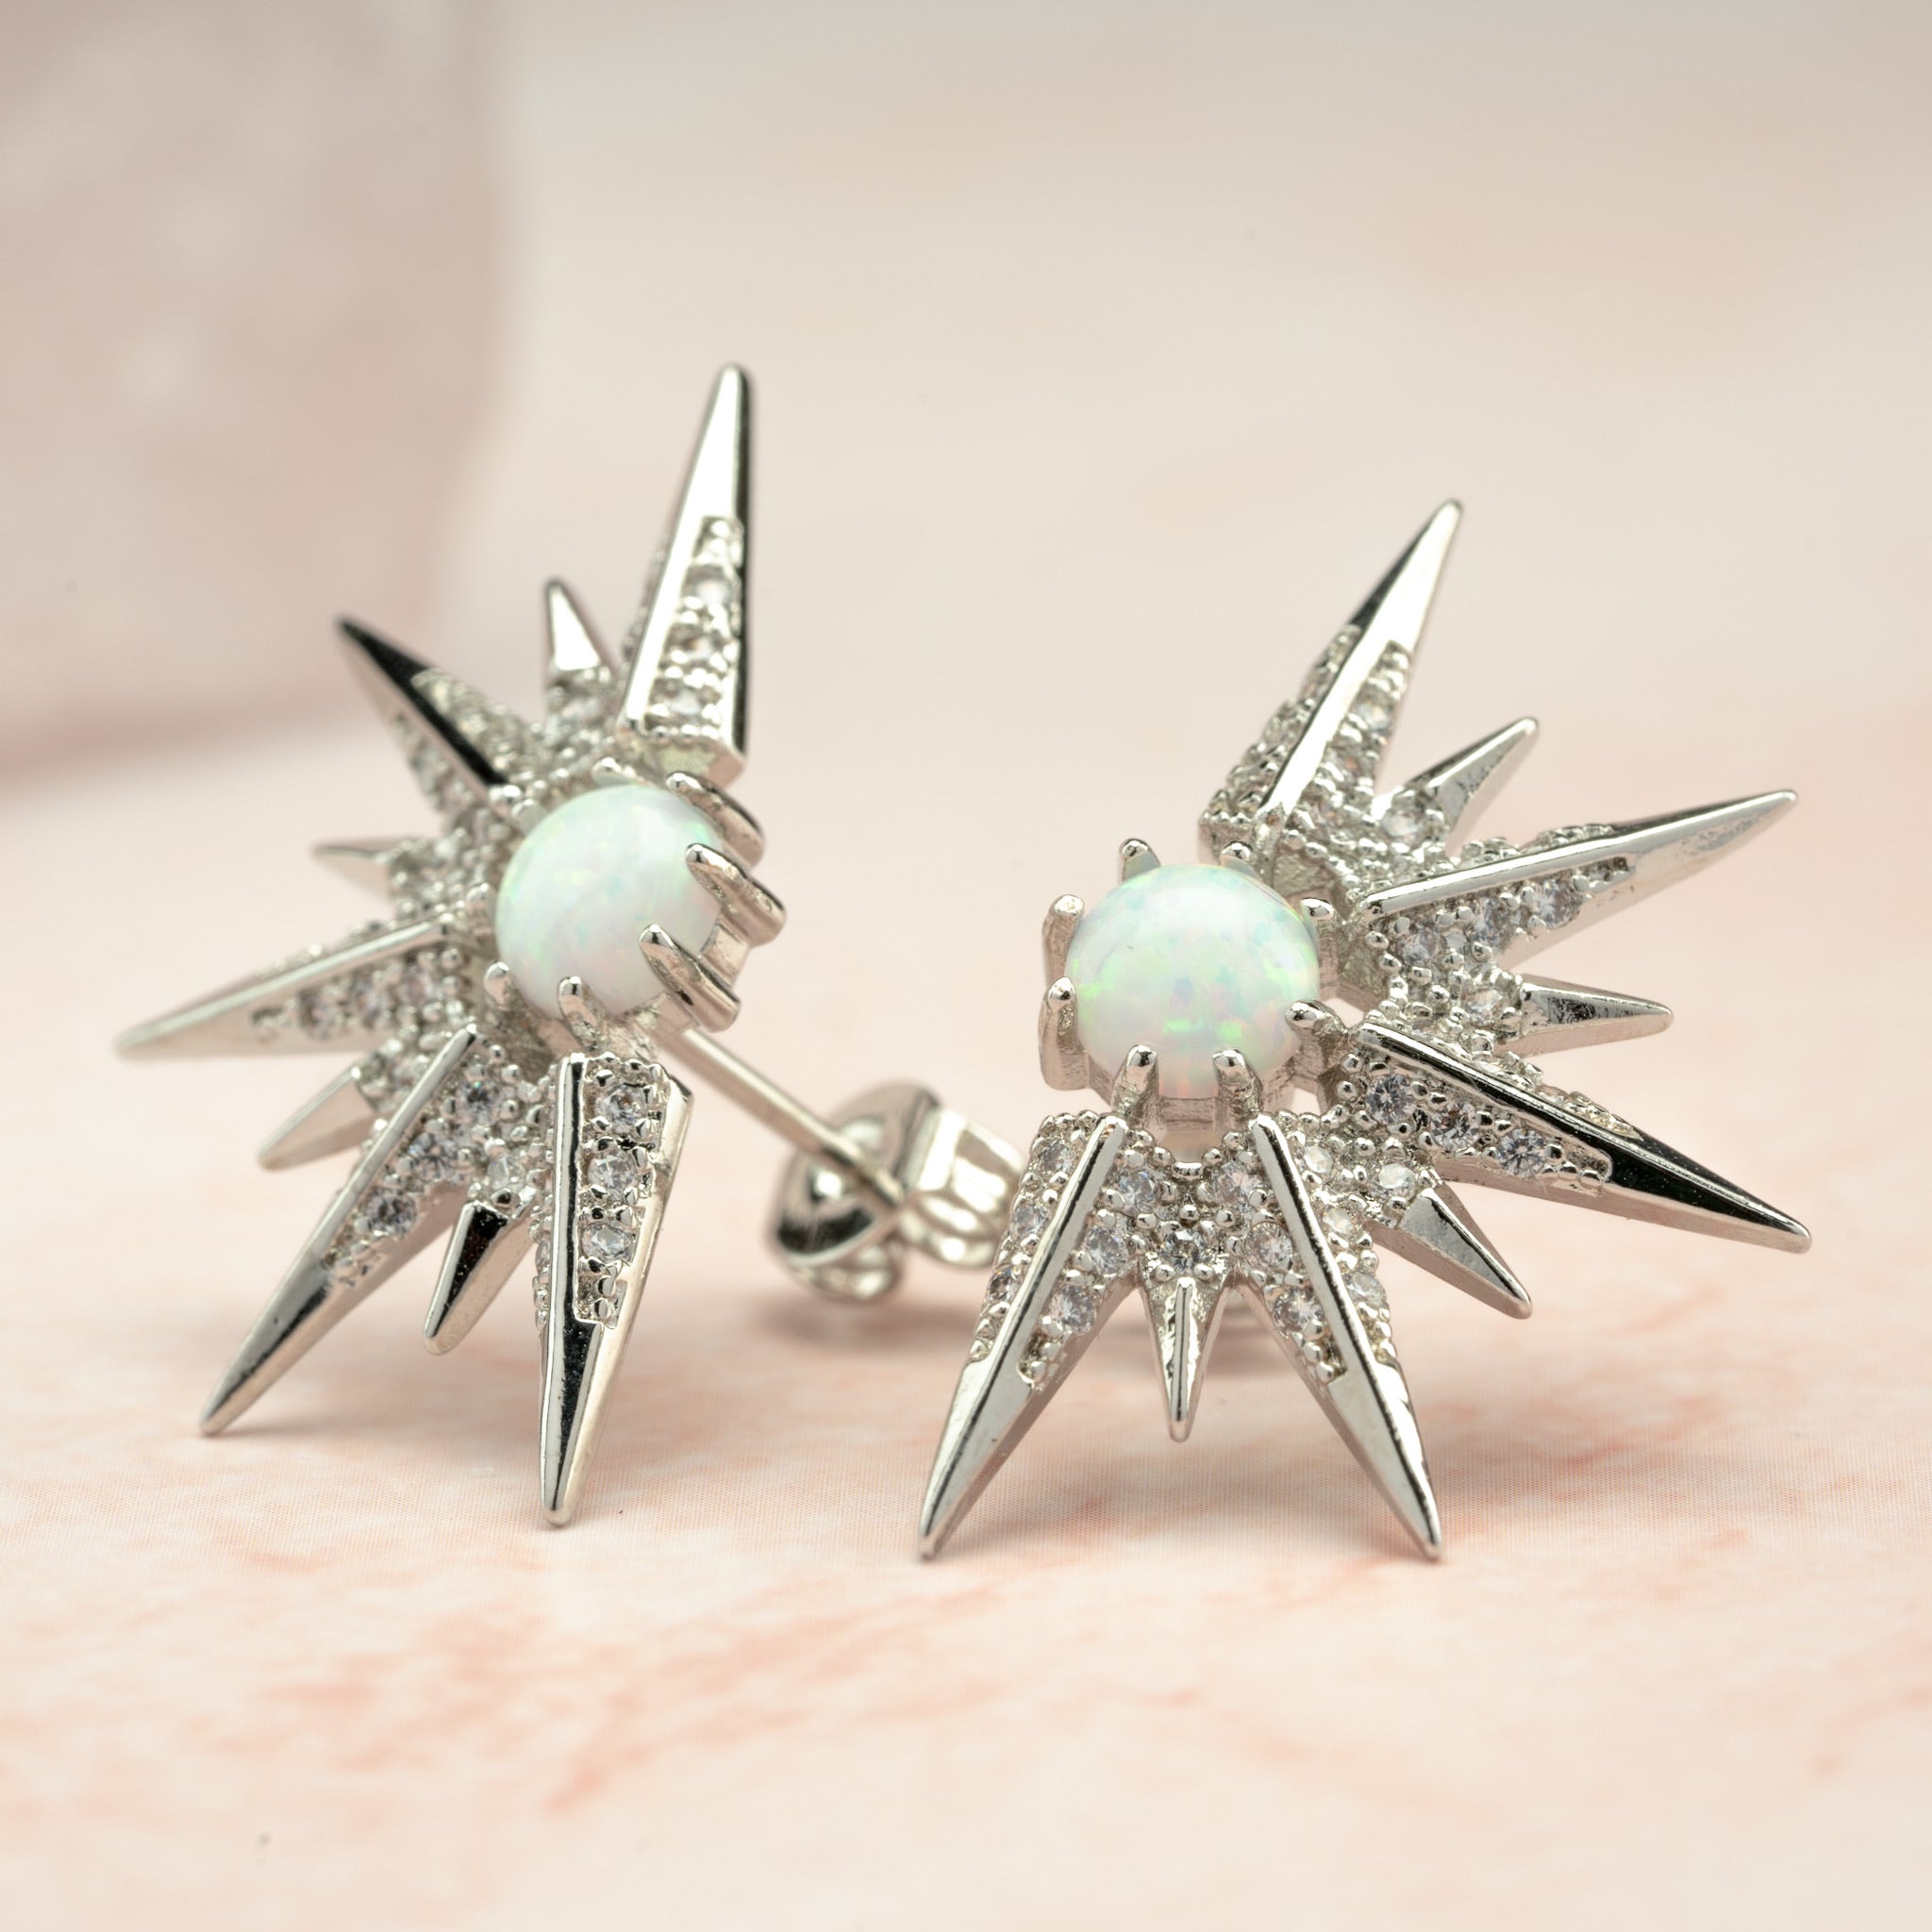 Goddess Spikes Earrings